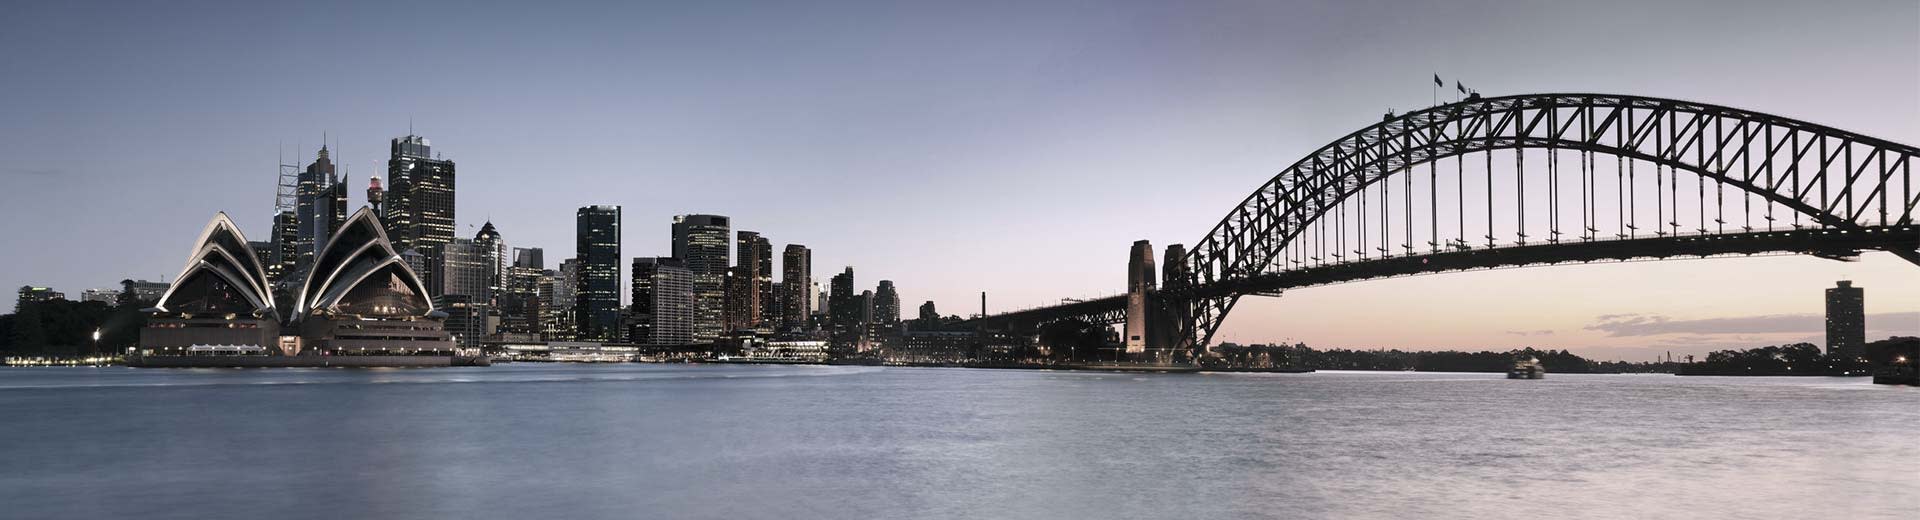 Das berühmte Sydney Opera House dominiert diese Szene mit mehreren Gebäuden und der Sydney Bridge auf der rechten Seite.